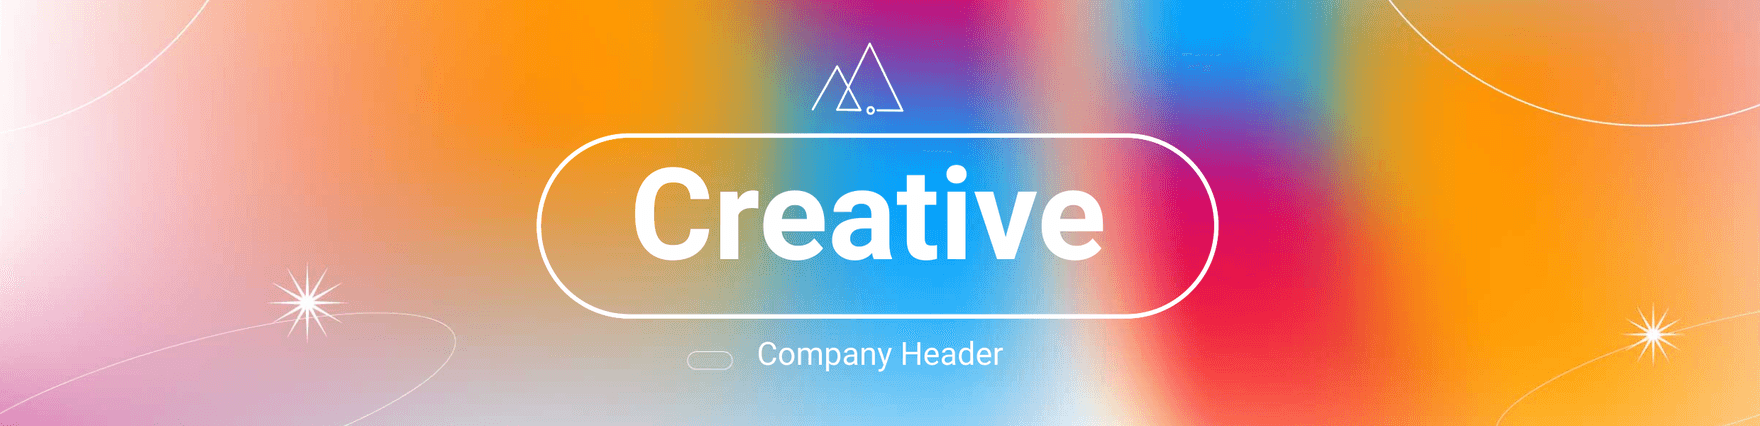 Creative Company Header